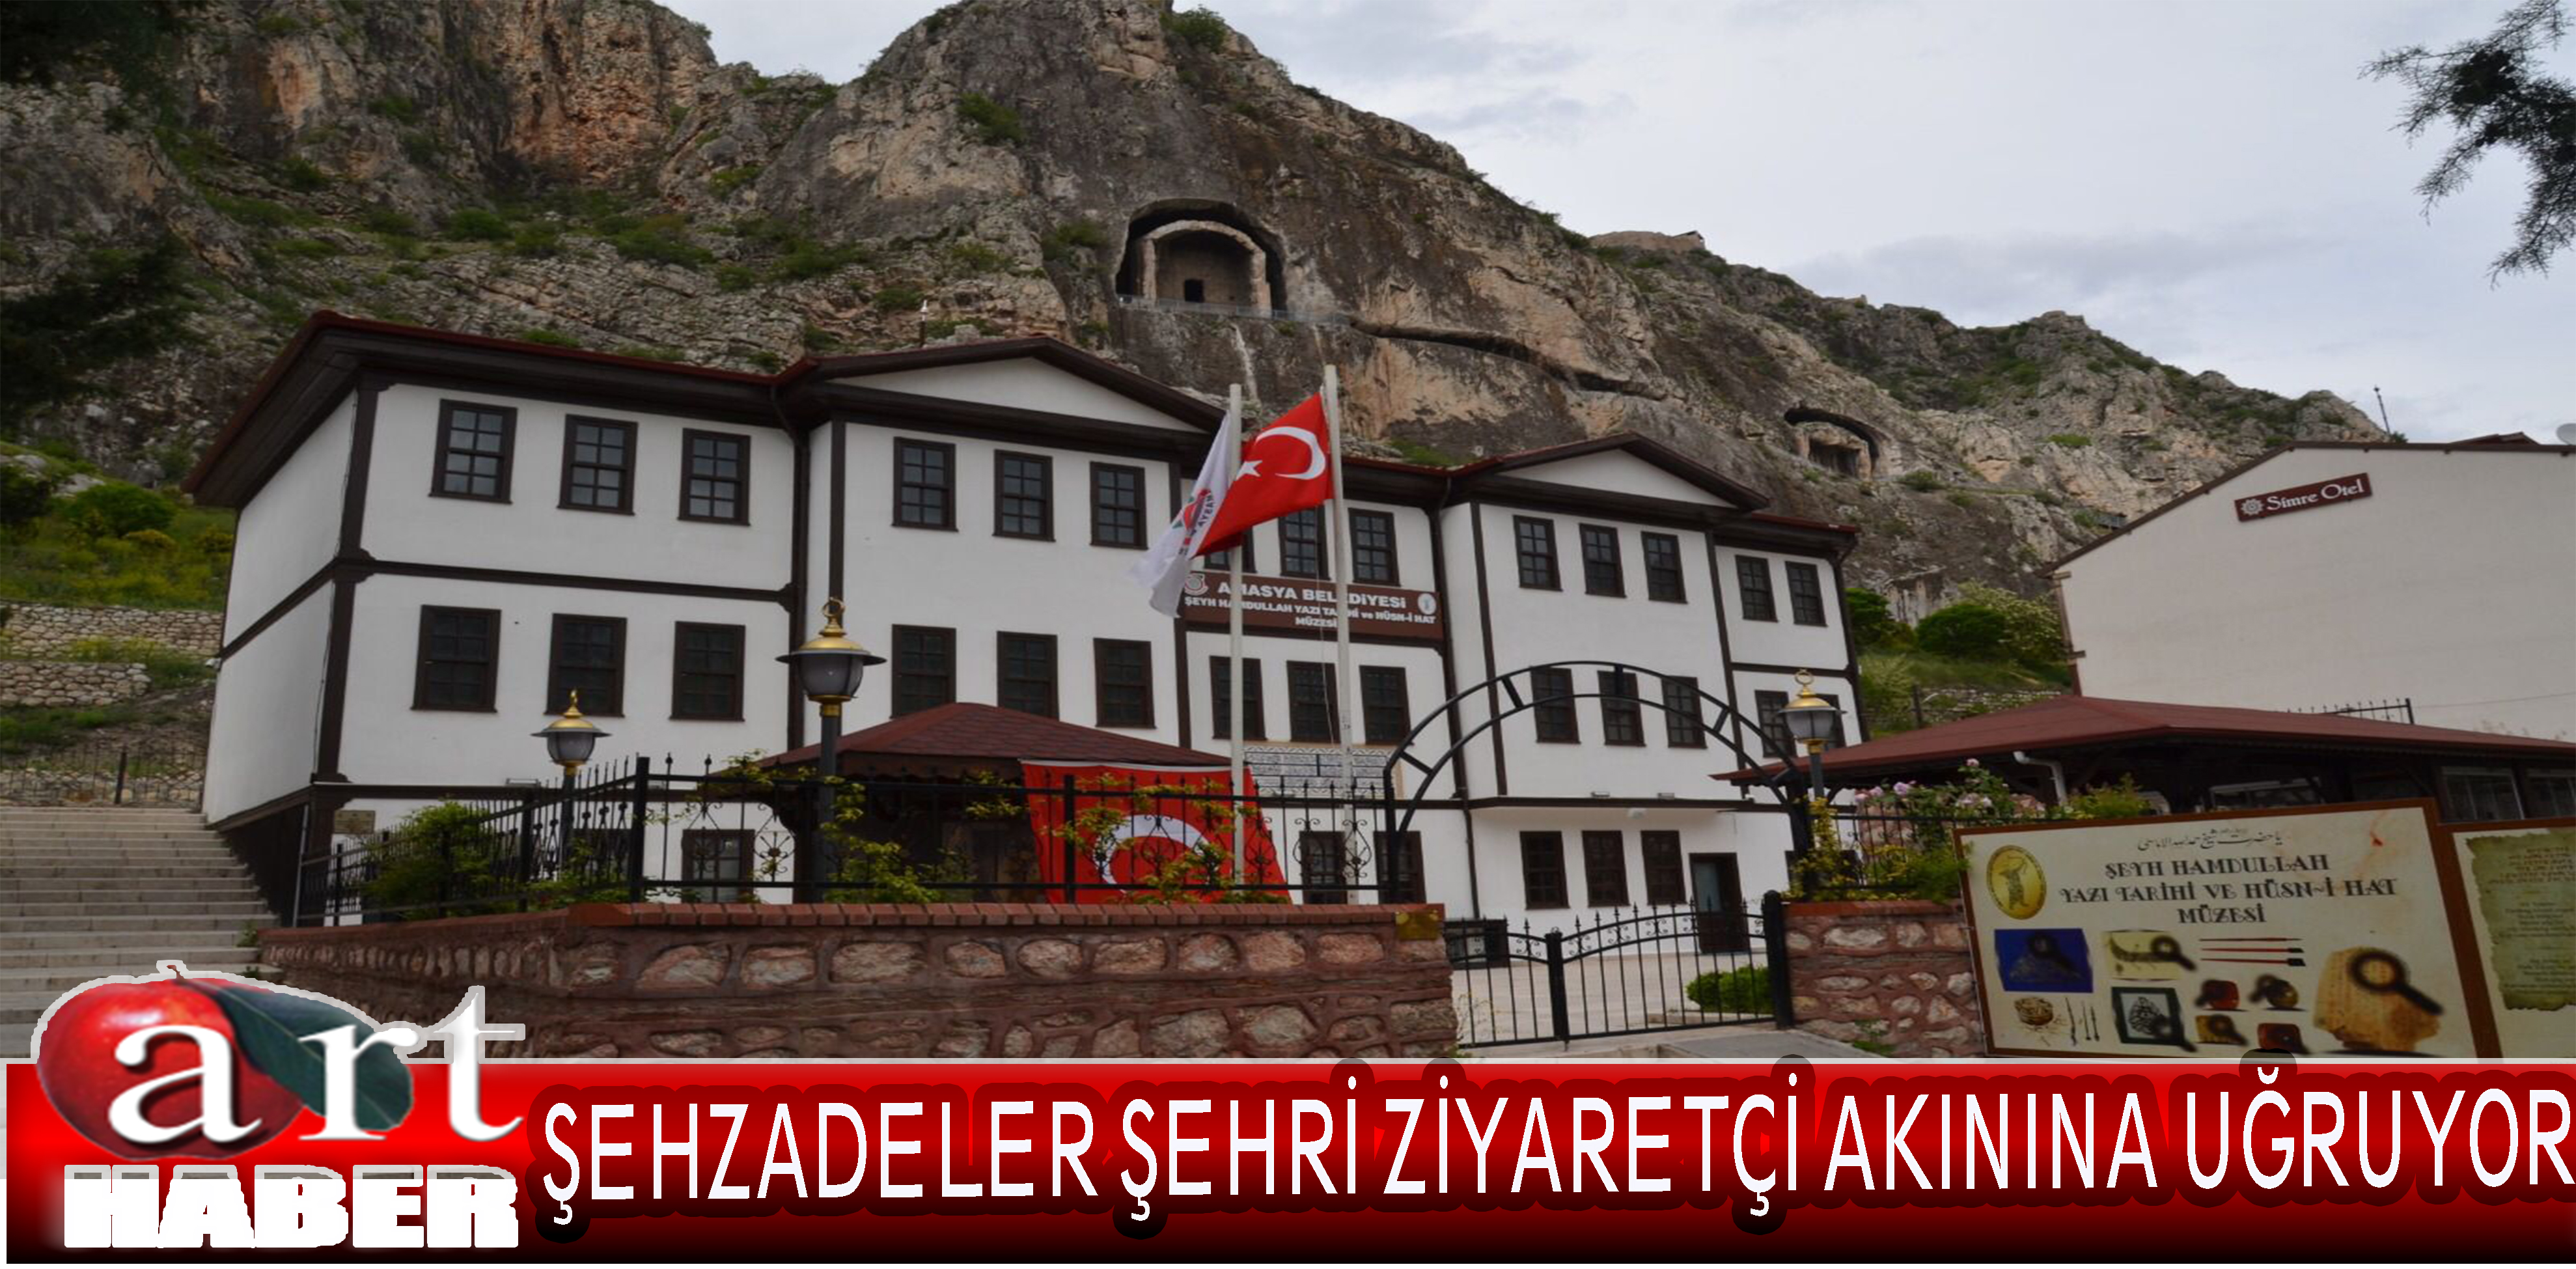 Şehzadeler Şehri Amasya tarihi ve kültürel yapısıyla ziyaretçi akınına uğruyor.